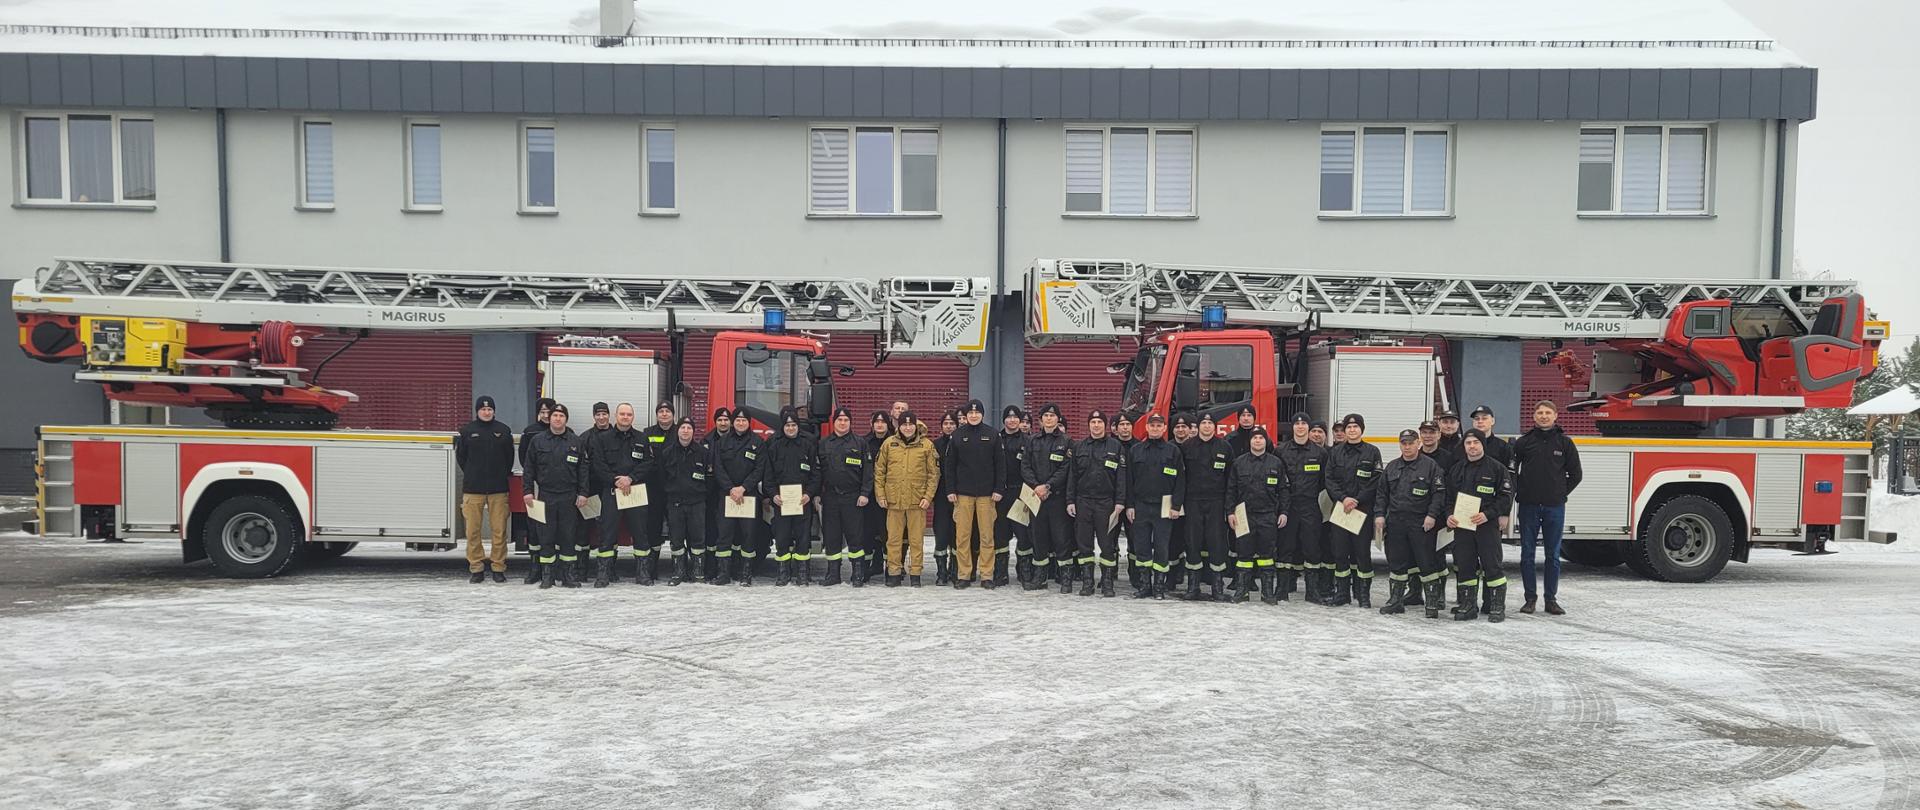 Na zdjęciu widzimy grupę strażaków pozującą do zdjęcia na tle samochodów z drabiną mechaniczną. Strażacy w rękach trzymają certyfikaty potwierdzające udział w szkoleniu z obsługi drabin. 